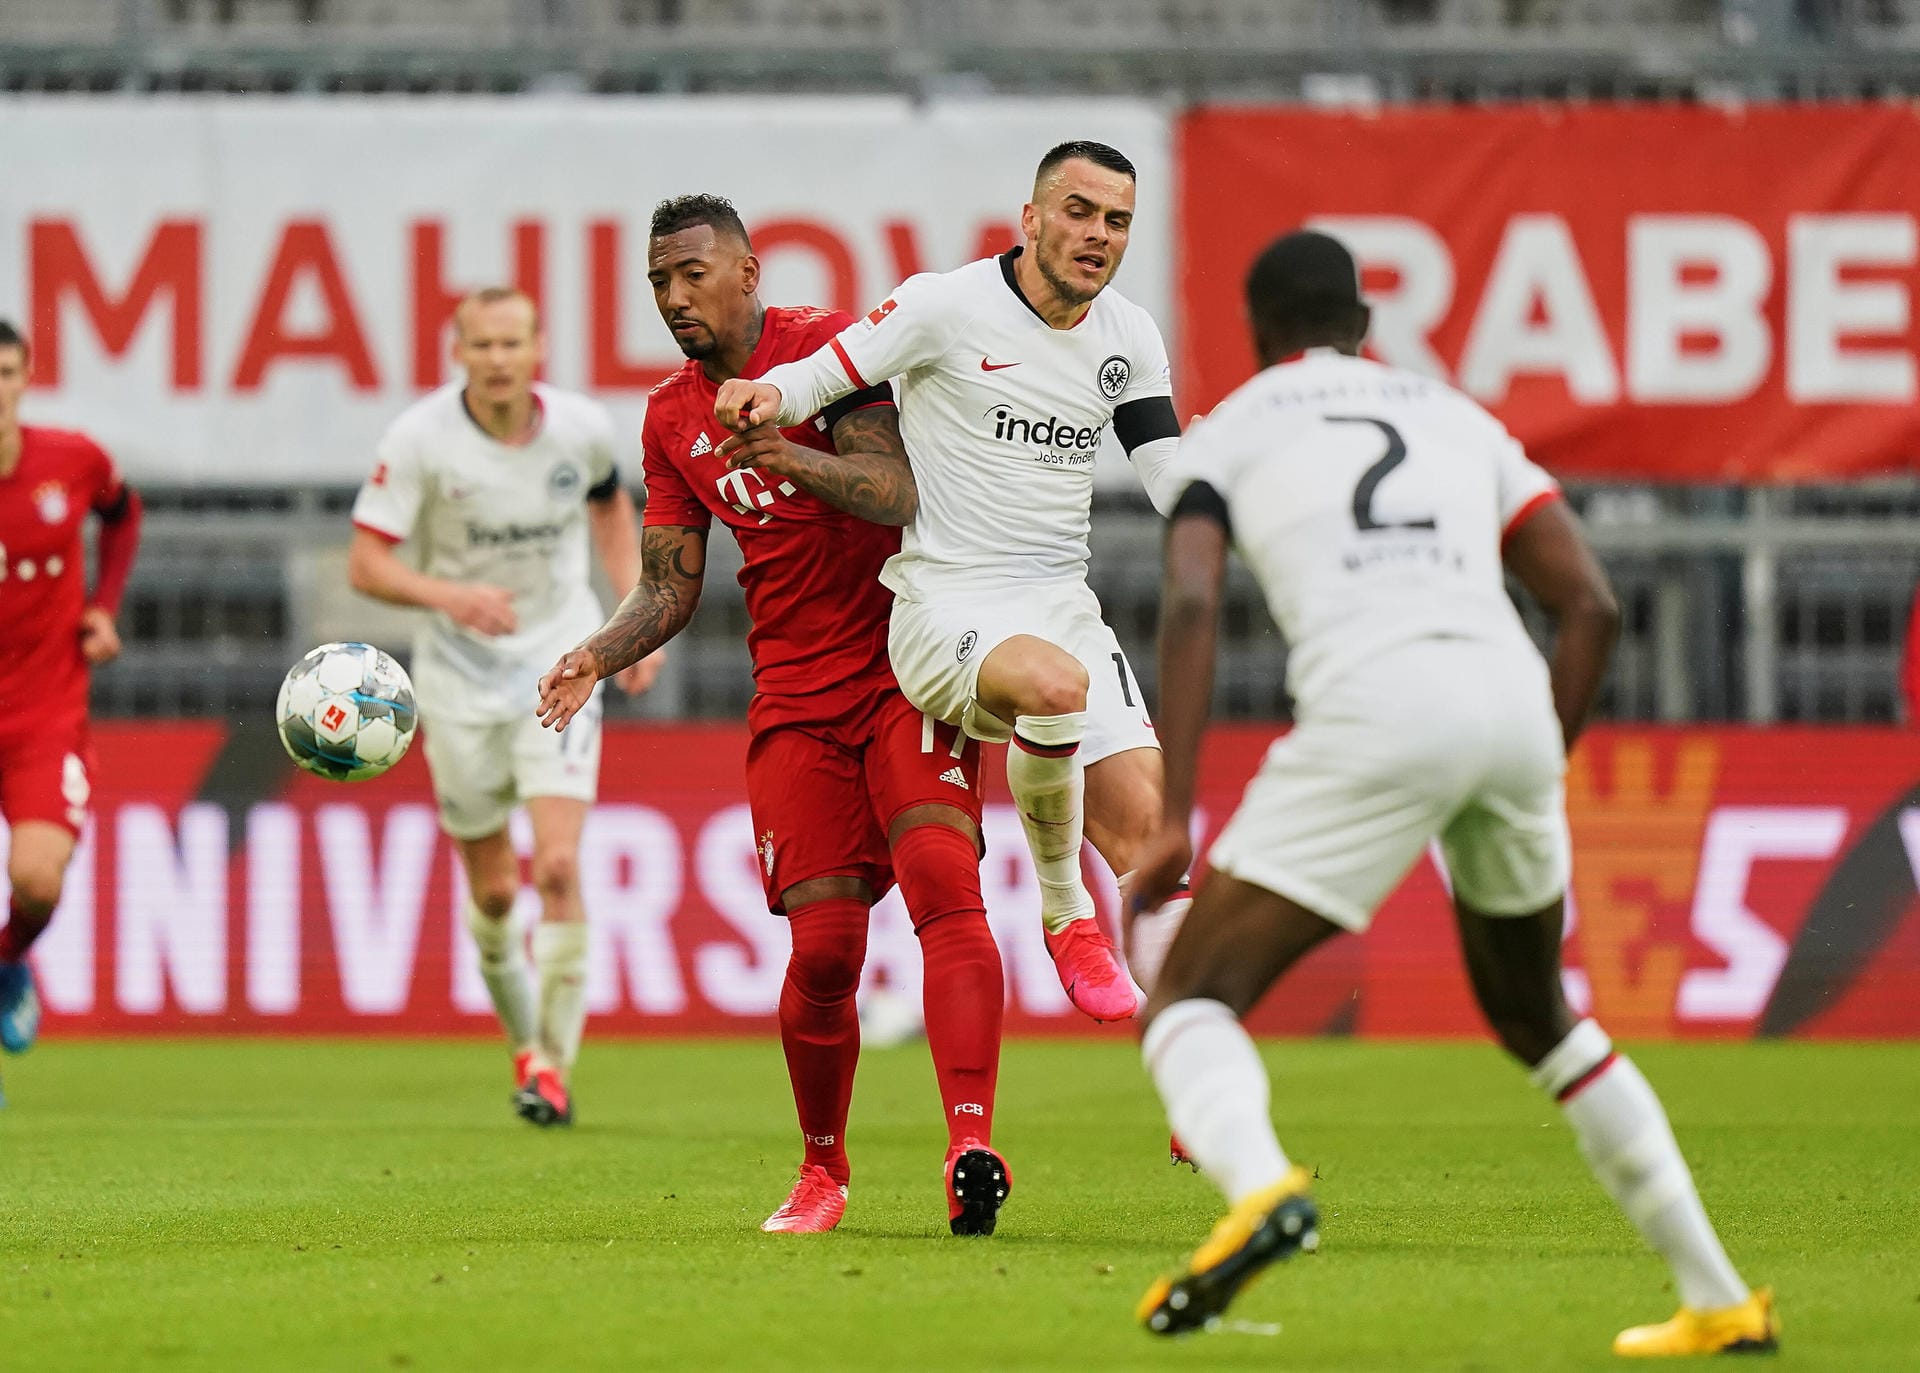 Jérôme Boateng: Wie sein früherer DFB-Teamkollege Mats Hummels war auch Bayerns Jérôme Boateng nach dem Bundesligaspiel am Samstag angeschlagen. Den Verteidiger plagten nach dem 5:2 gegen Eintracht Frankfurt Muskelprobleme. Mittlerweile ist der 31-Jährige aber ebenfalls wieder einsatzbereit.